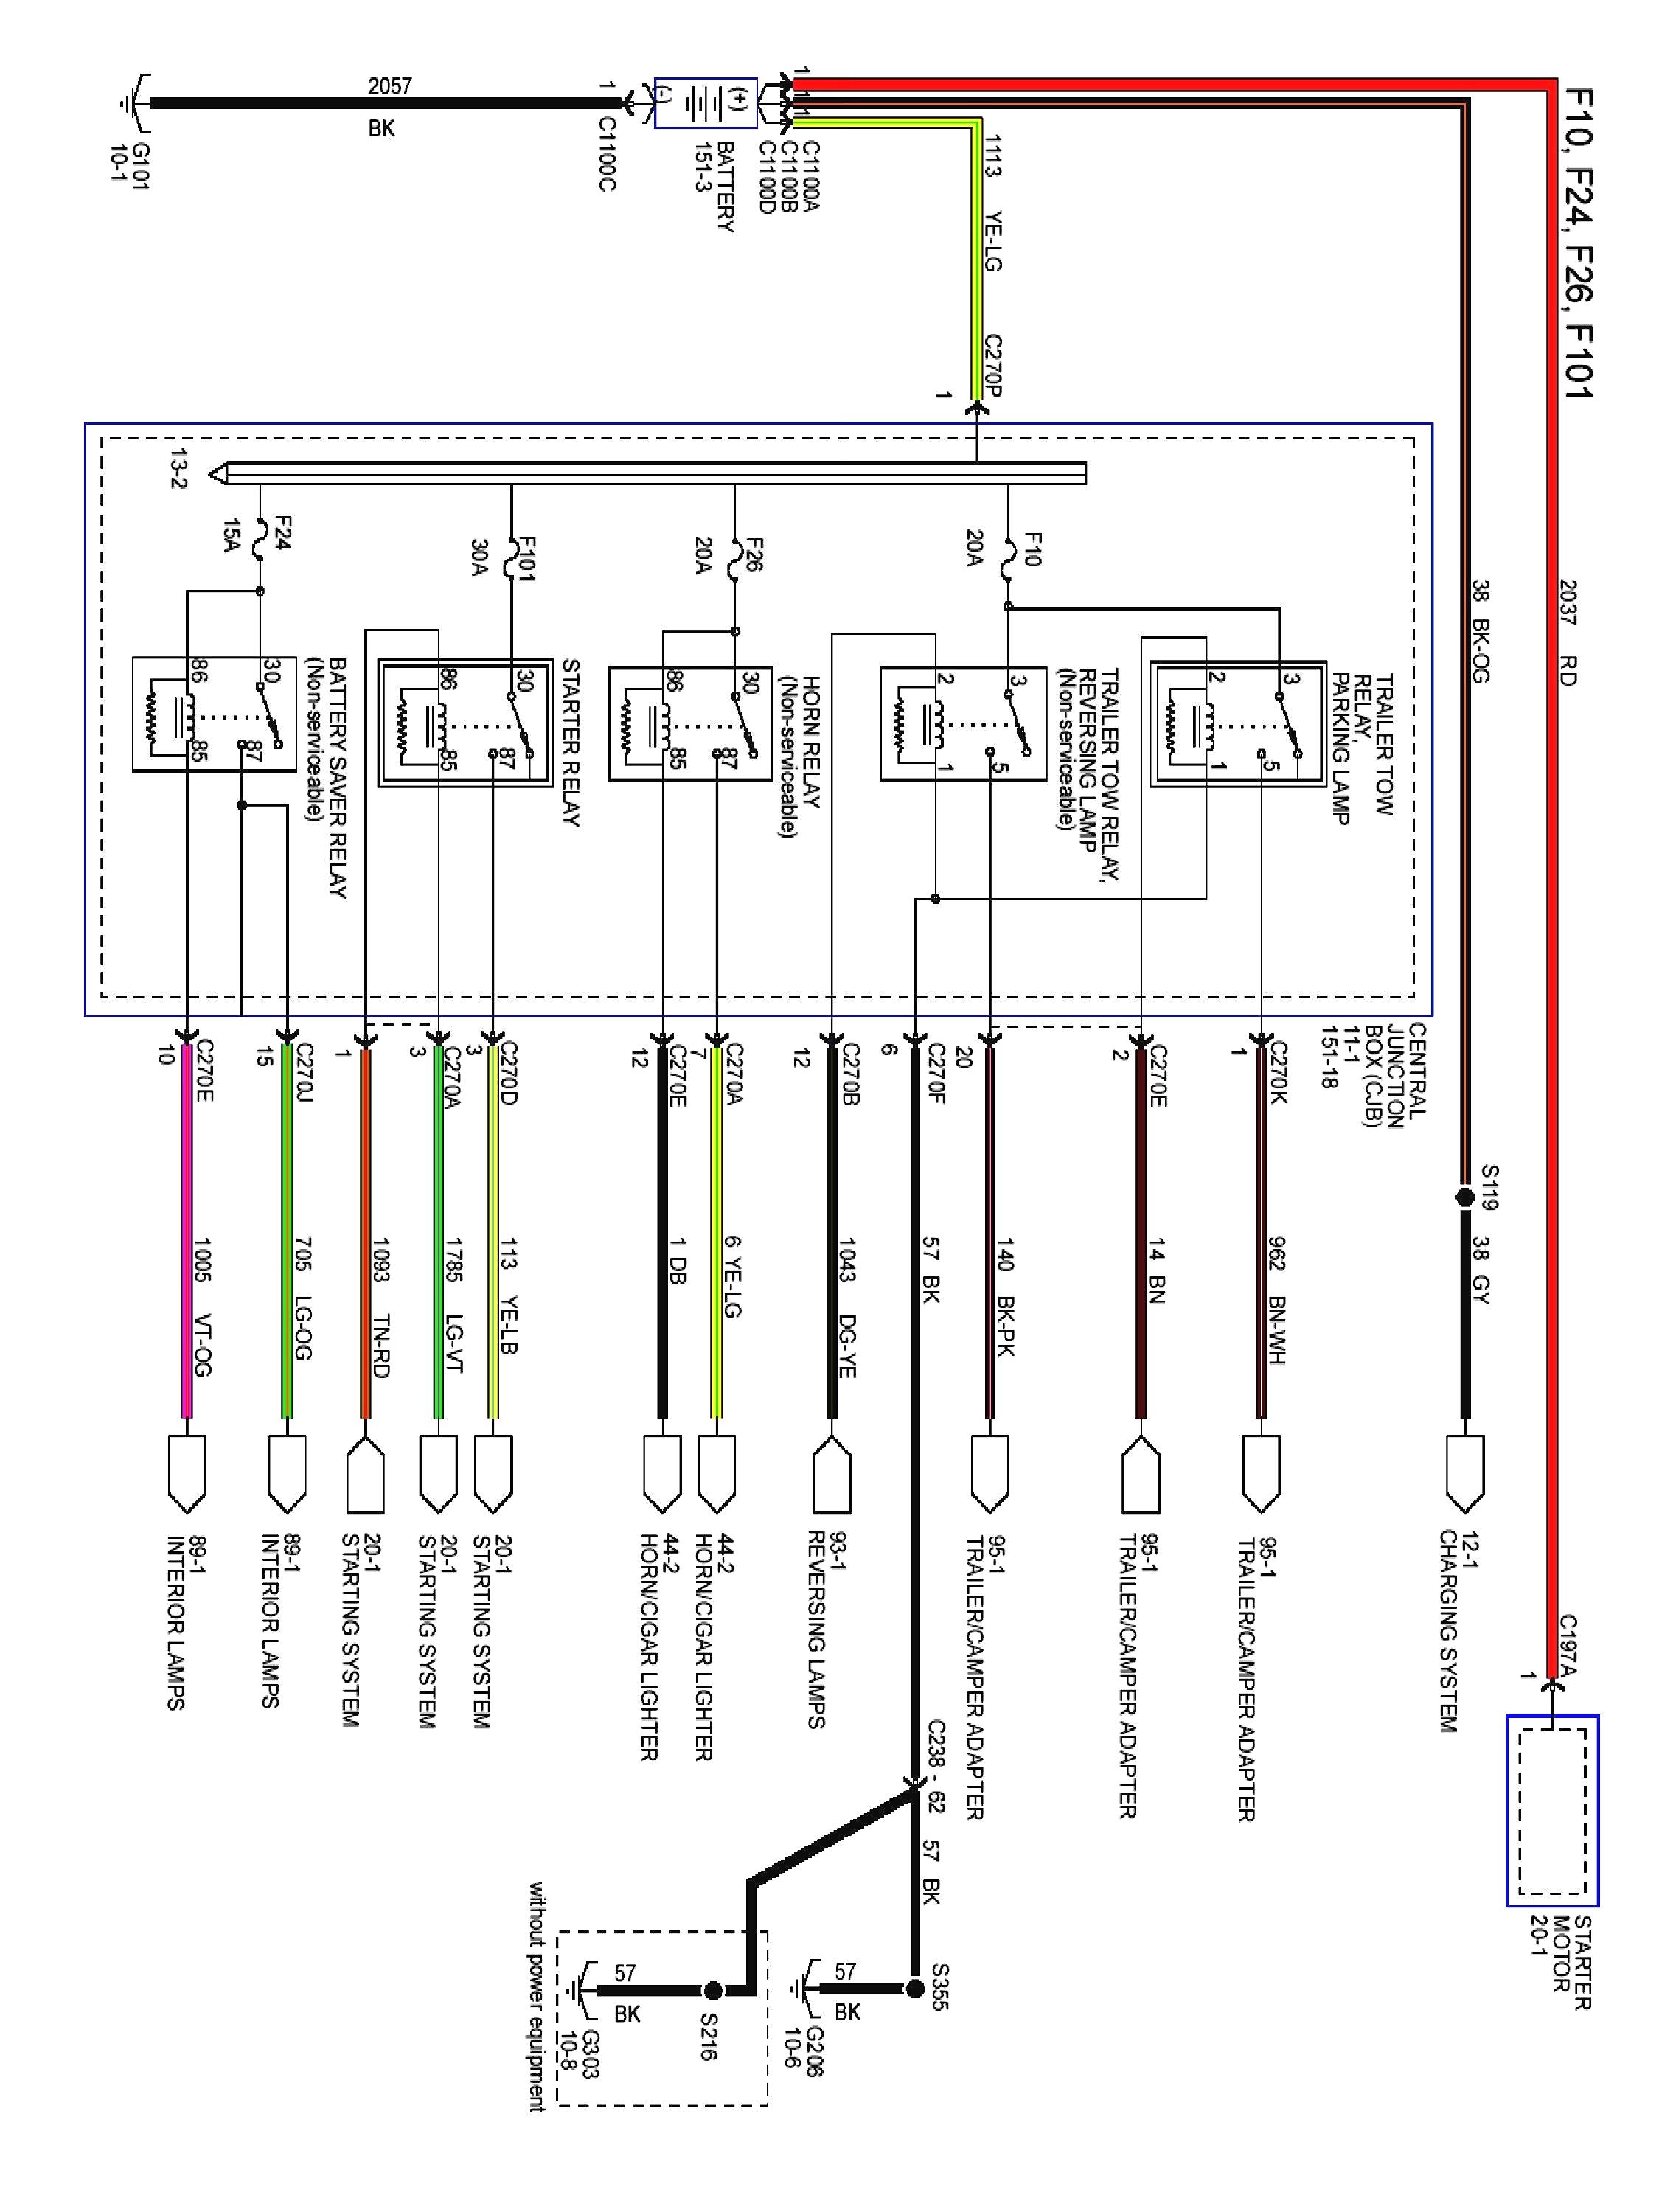 edko wiring diagram wiring diagram today edko wiring diagram